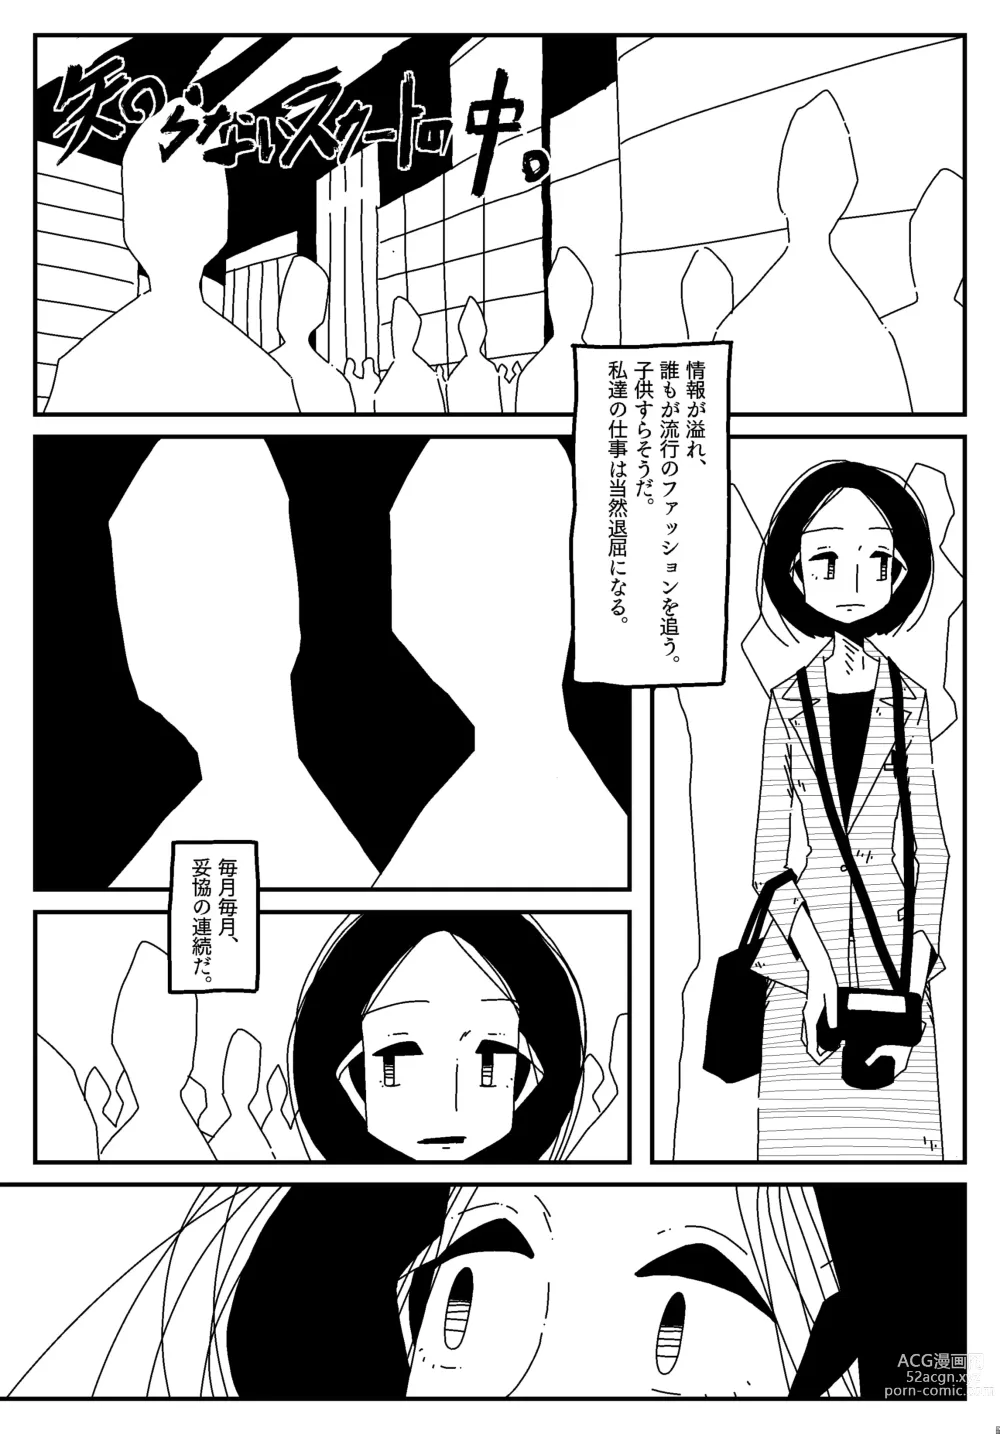 Page 1 of doujinshi Shiranai Sukaato no Naka.